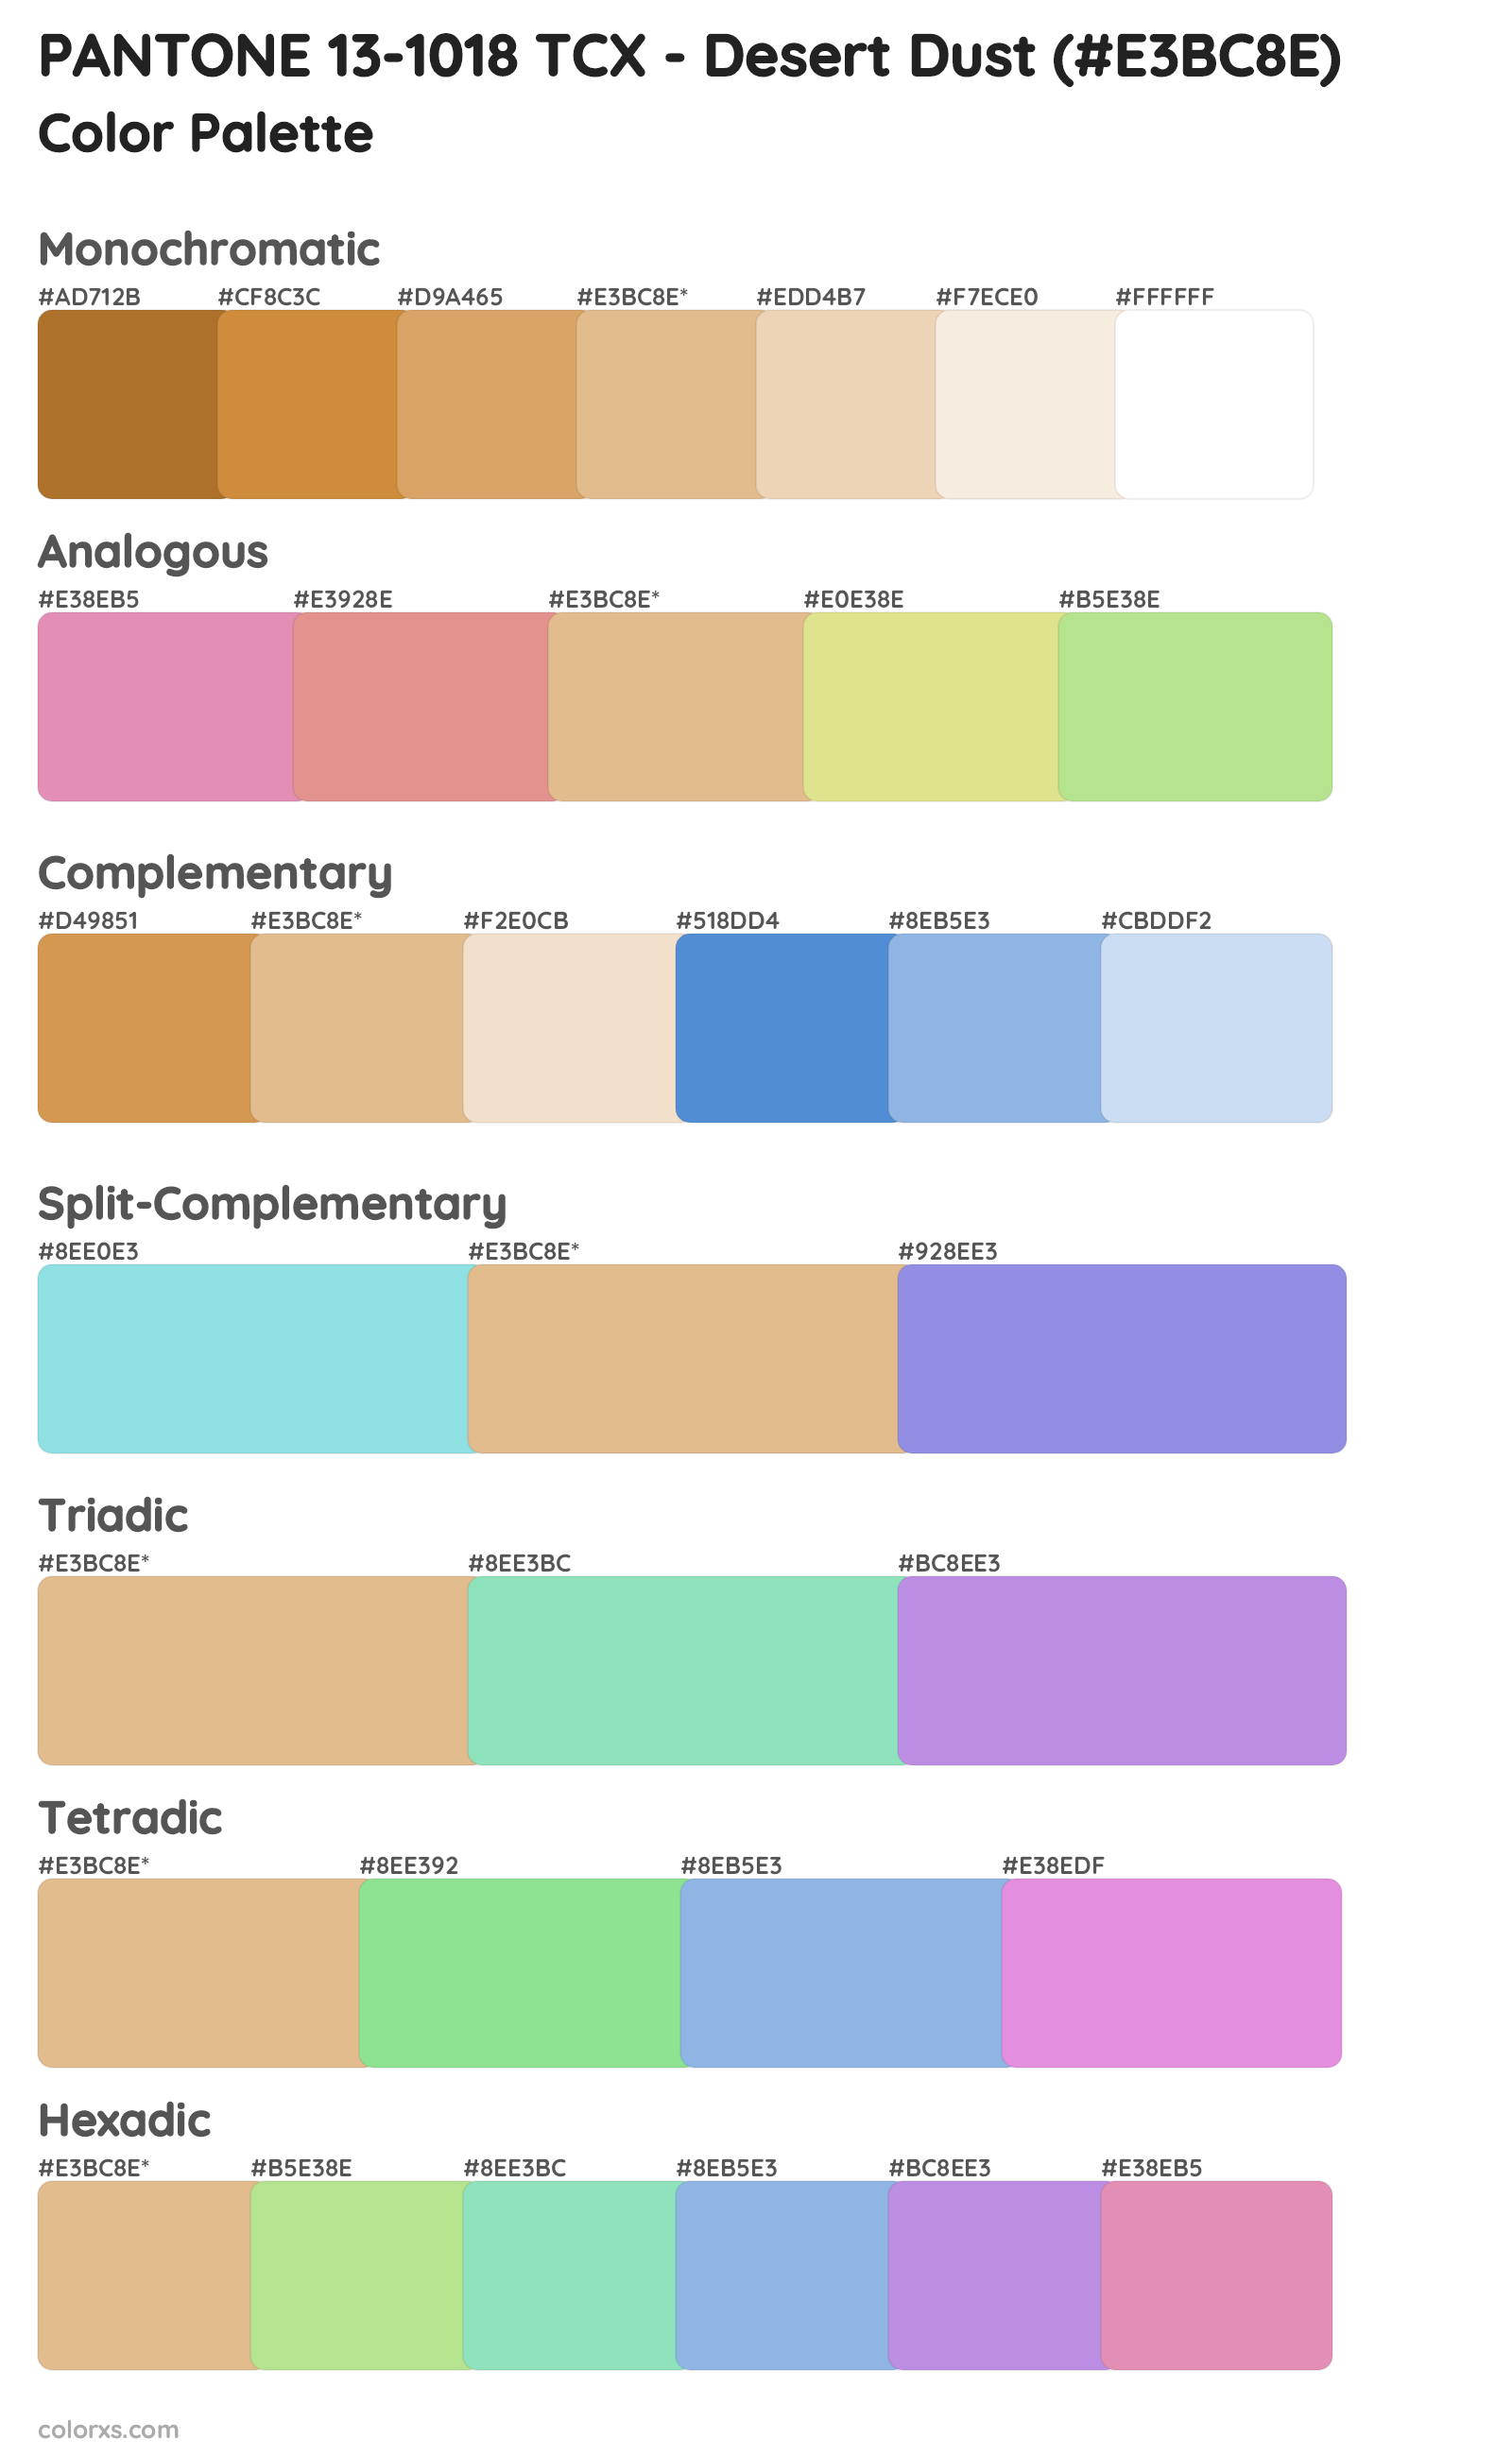 PANTONE 13-1018 TCX - Desert Dust Color Scheme Palettes